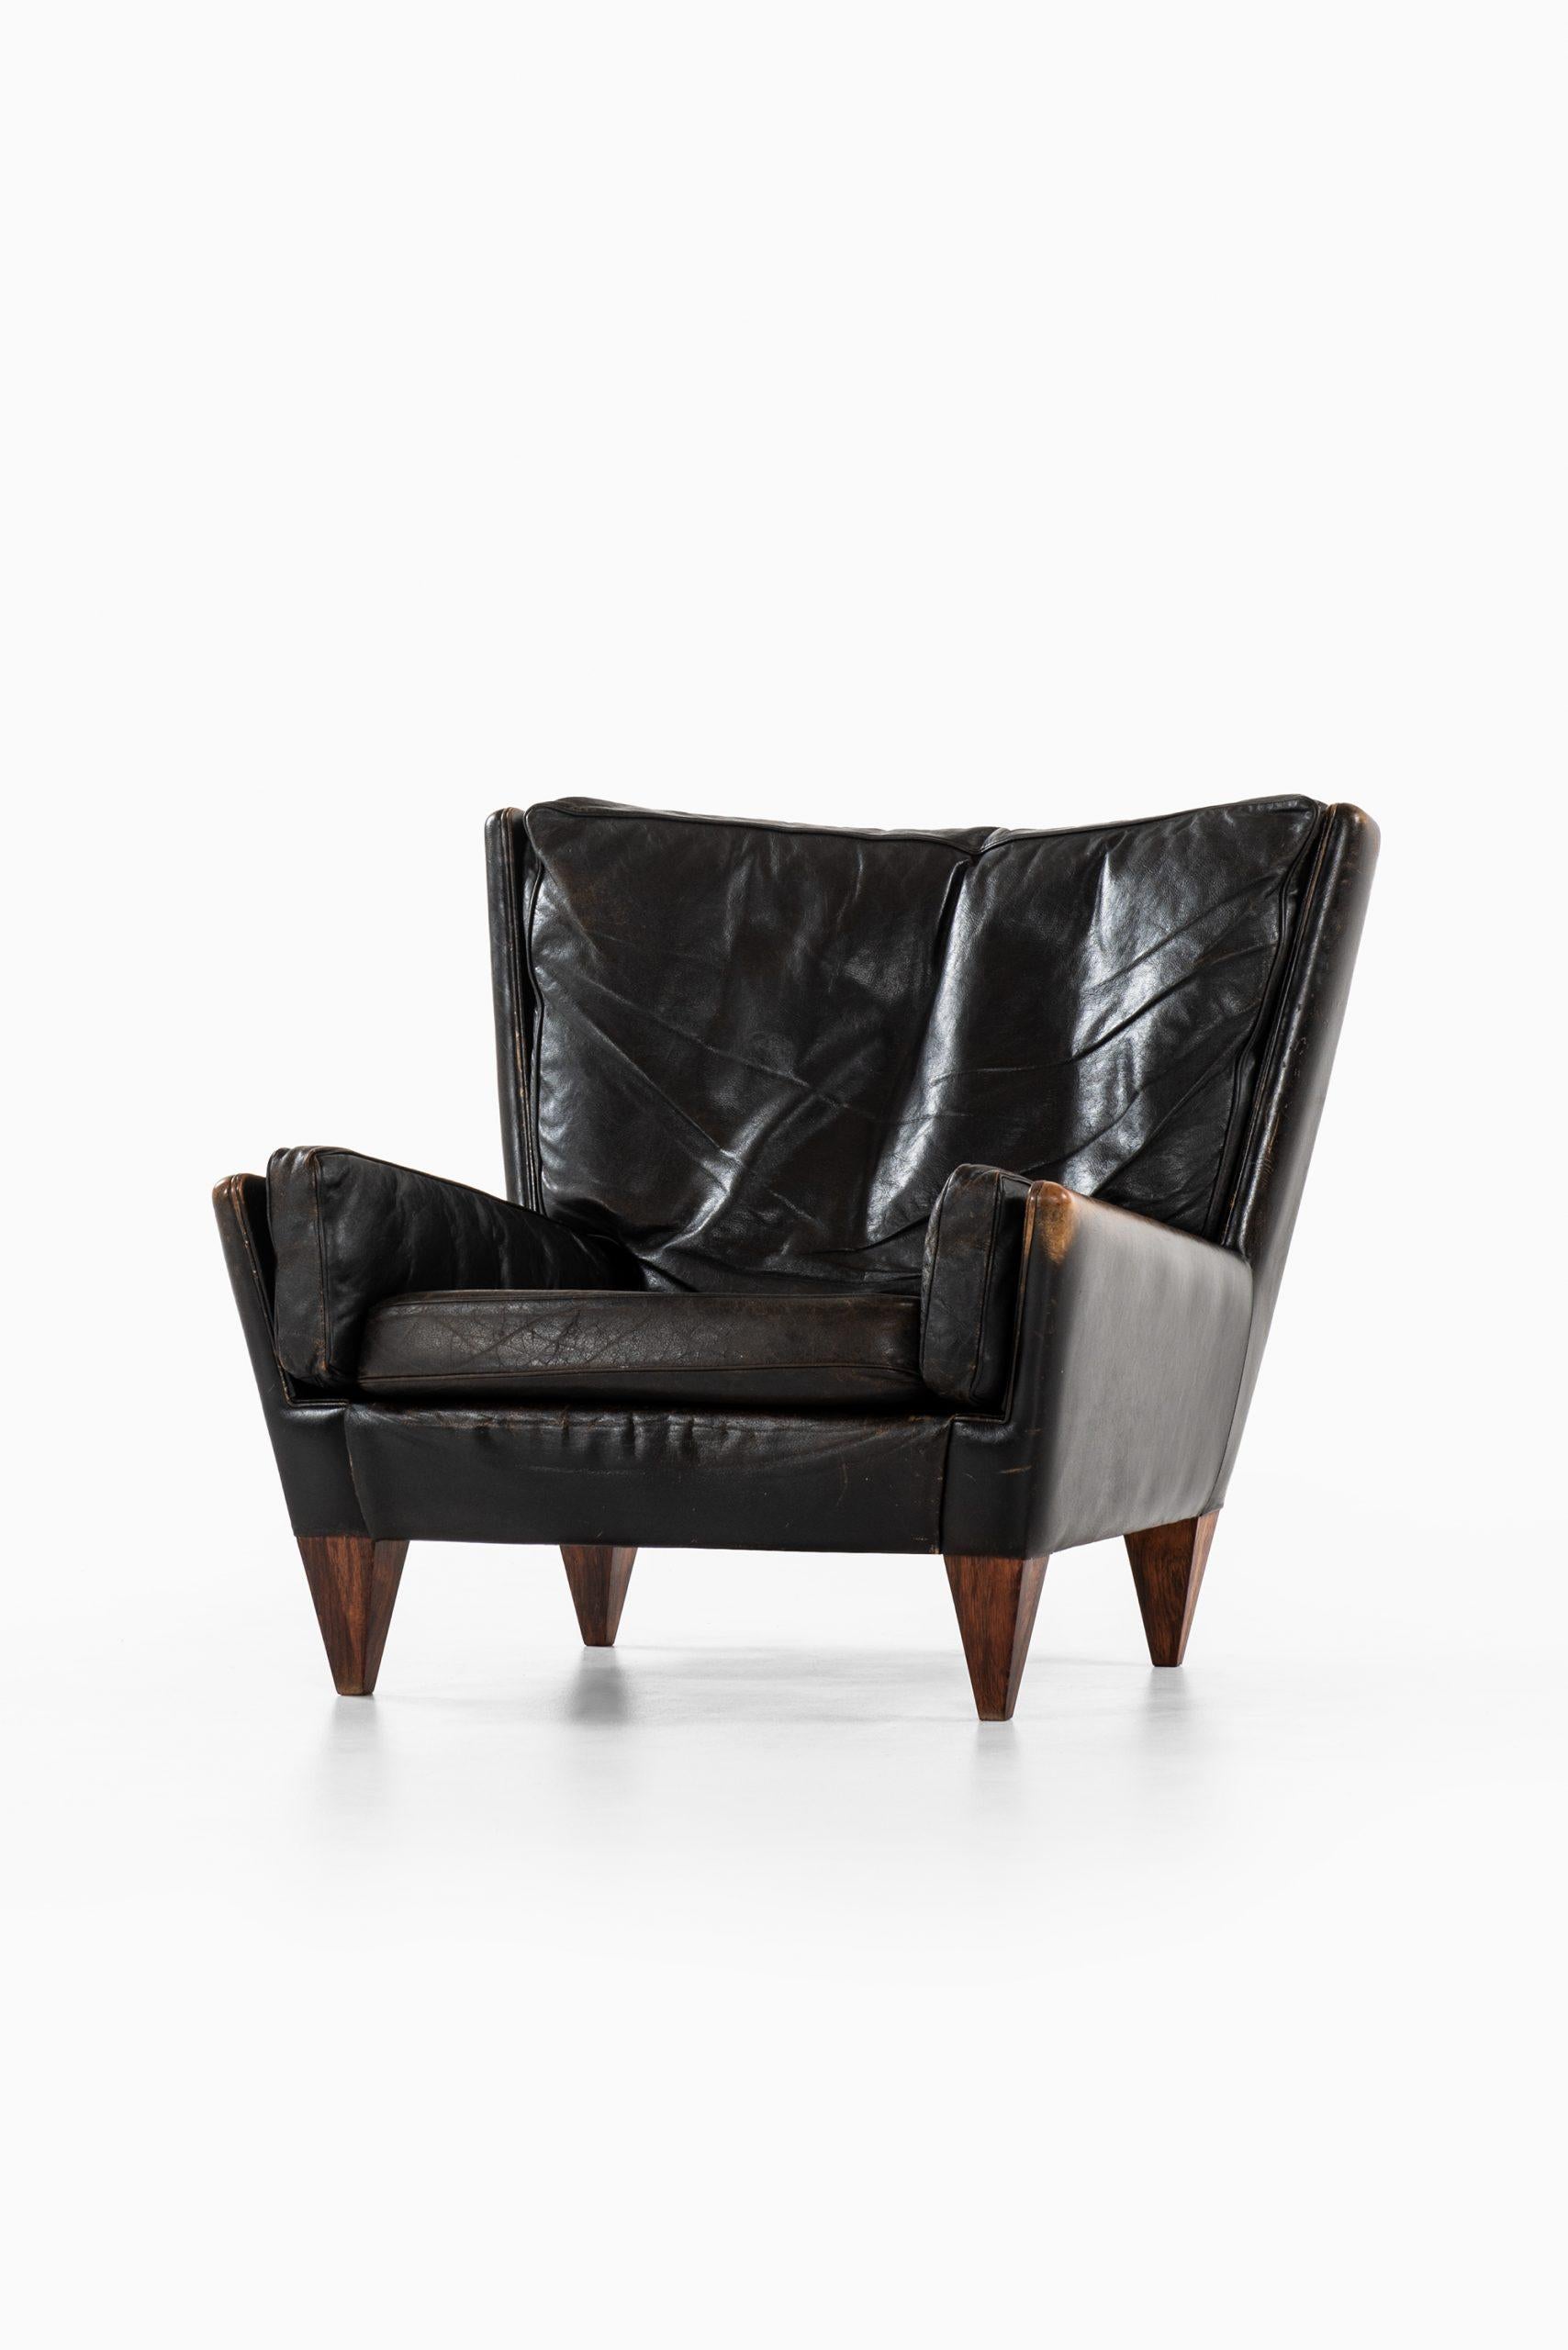 Very rare easy chair model V11 designed by Illum Wikkelsø. Produced by Holger Christiansen in Denmark.